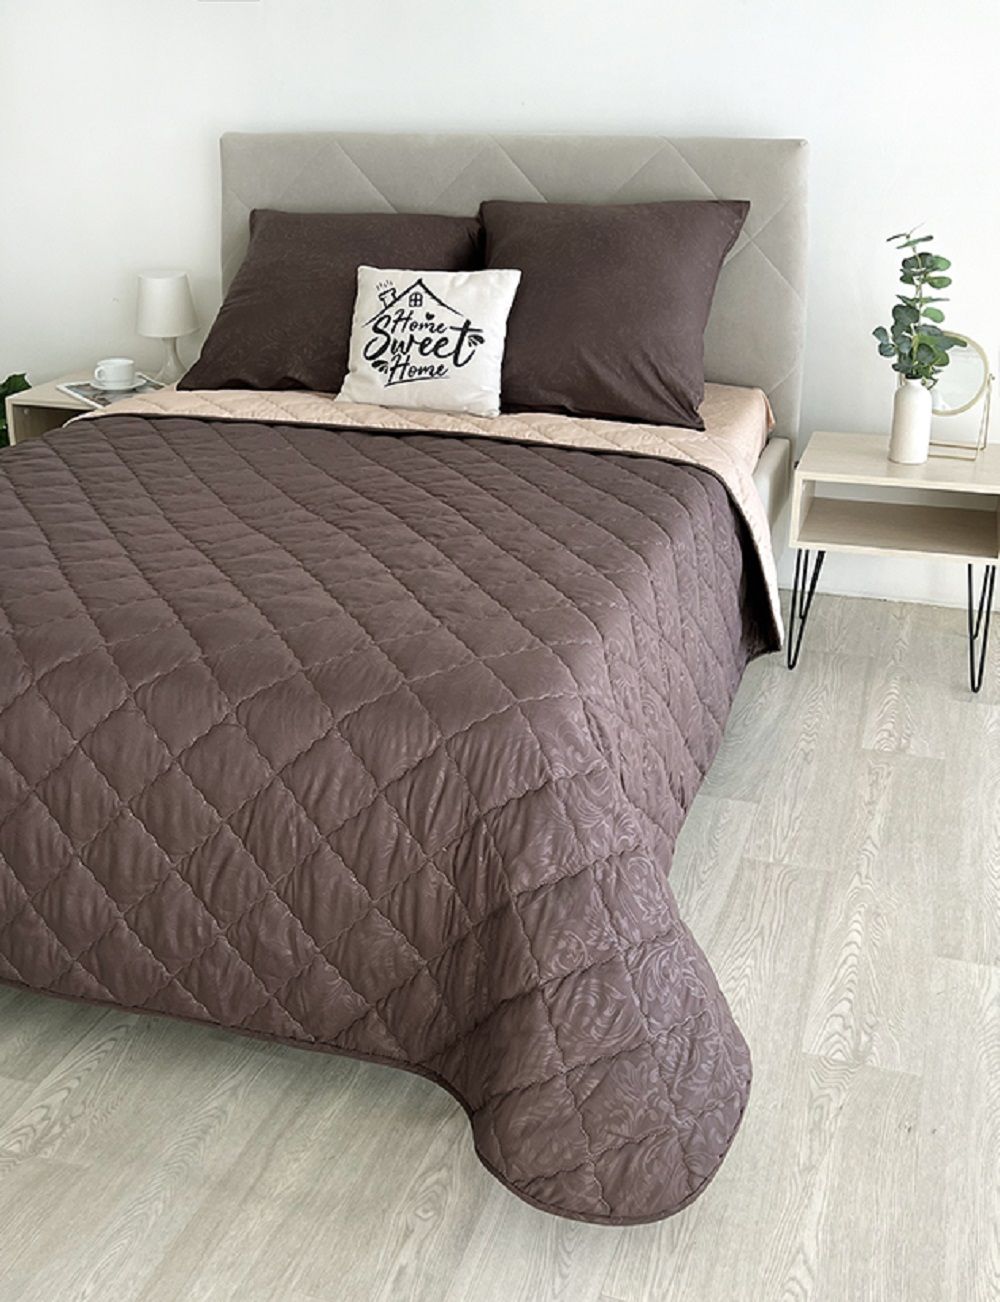 Комплект постельного белья с одеялом New Style КМ-001 коричневый-бежевый